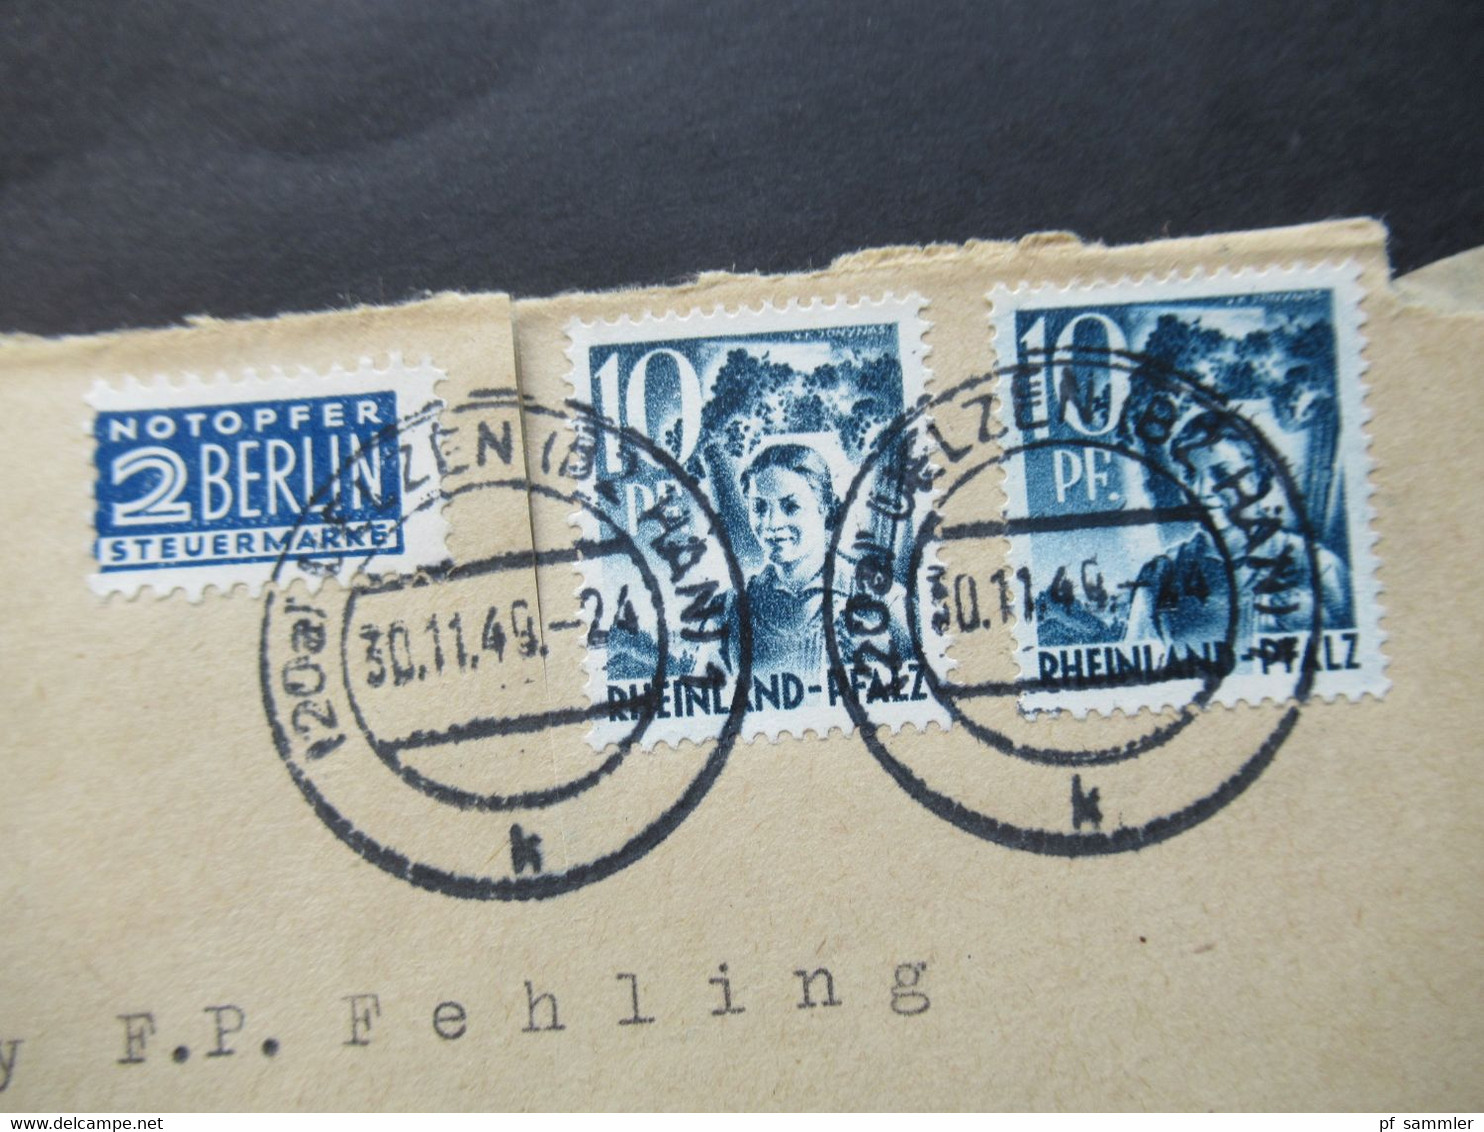 Französische Zone Rheinland Pfalz Nr.3 MeF  30.11.1949 Mit Notopfer Marke Umschlag Saatgut Heinr. Gerke Uelzen Hannover - Rhine-Palatinate